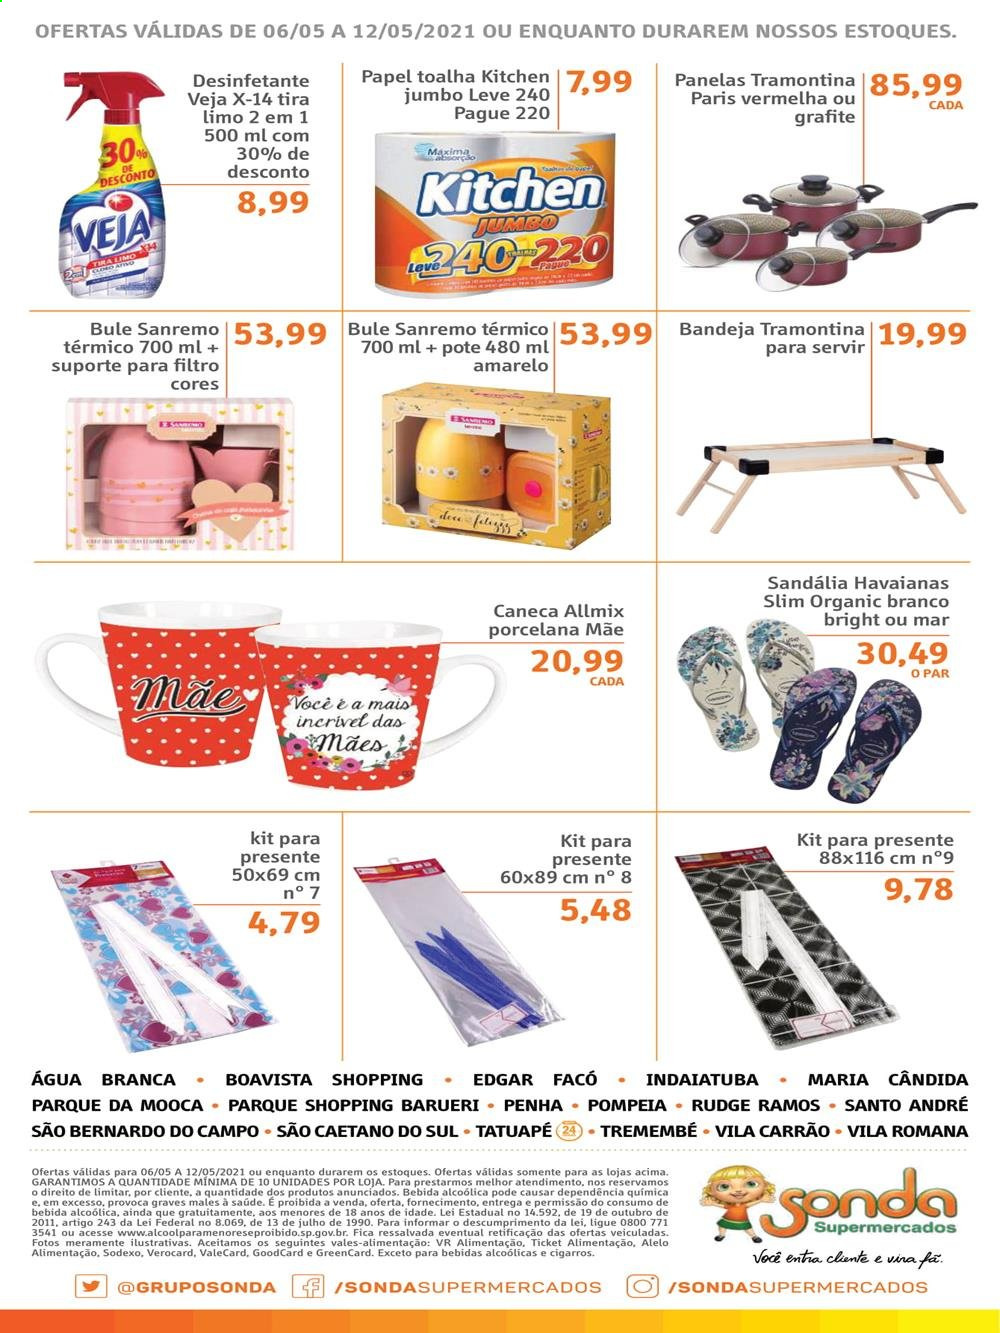 thumbnail - Folheto Sonda Supermercados - 06/05/2021 - 12/05/2021 - Produtos em promoção - papel toalha, desinfetante, Tramontina, bandeja, caneca. Página 10.